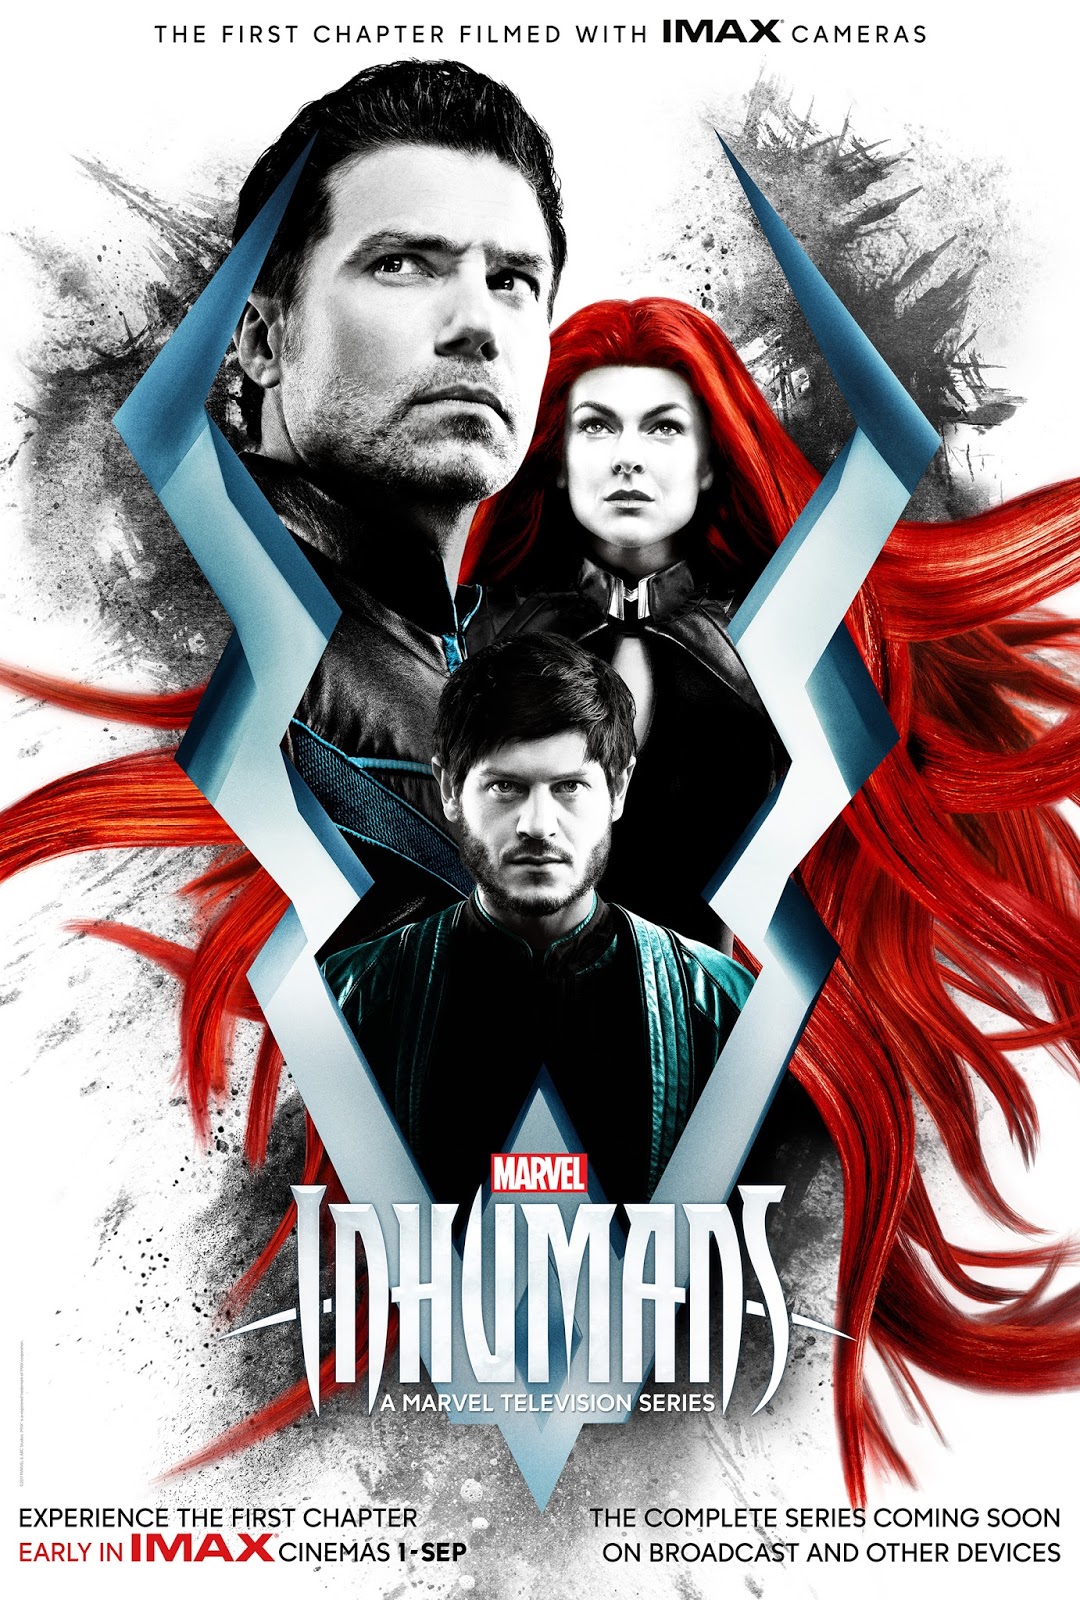 imax poster for marvel's inhumans